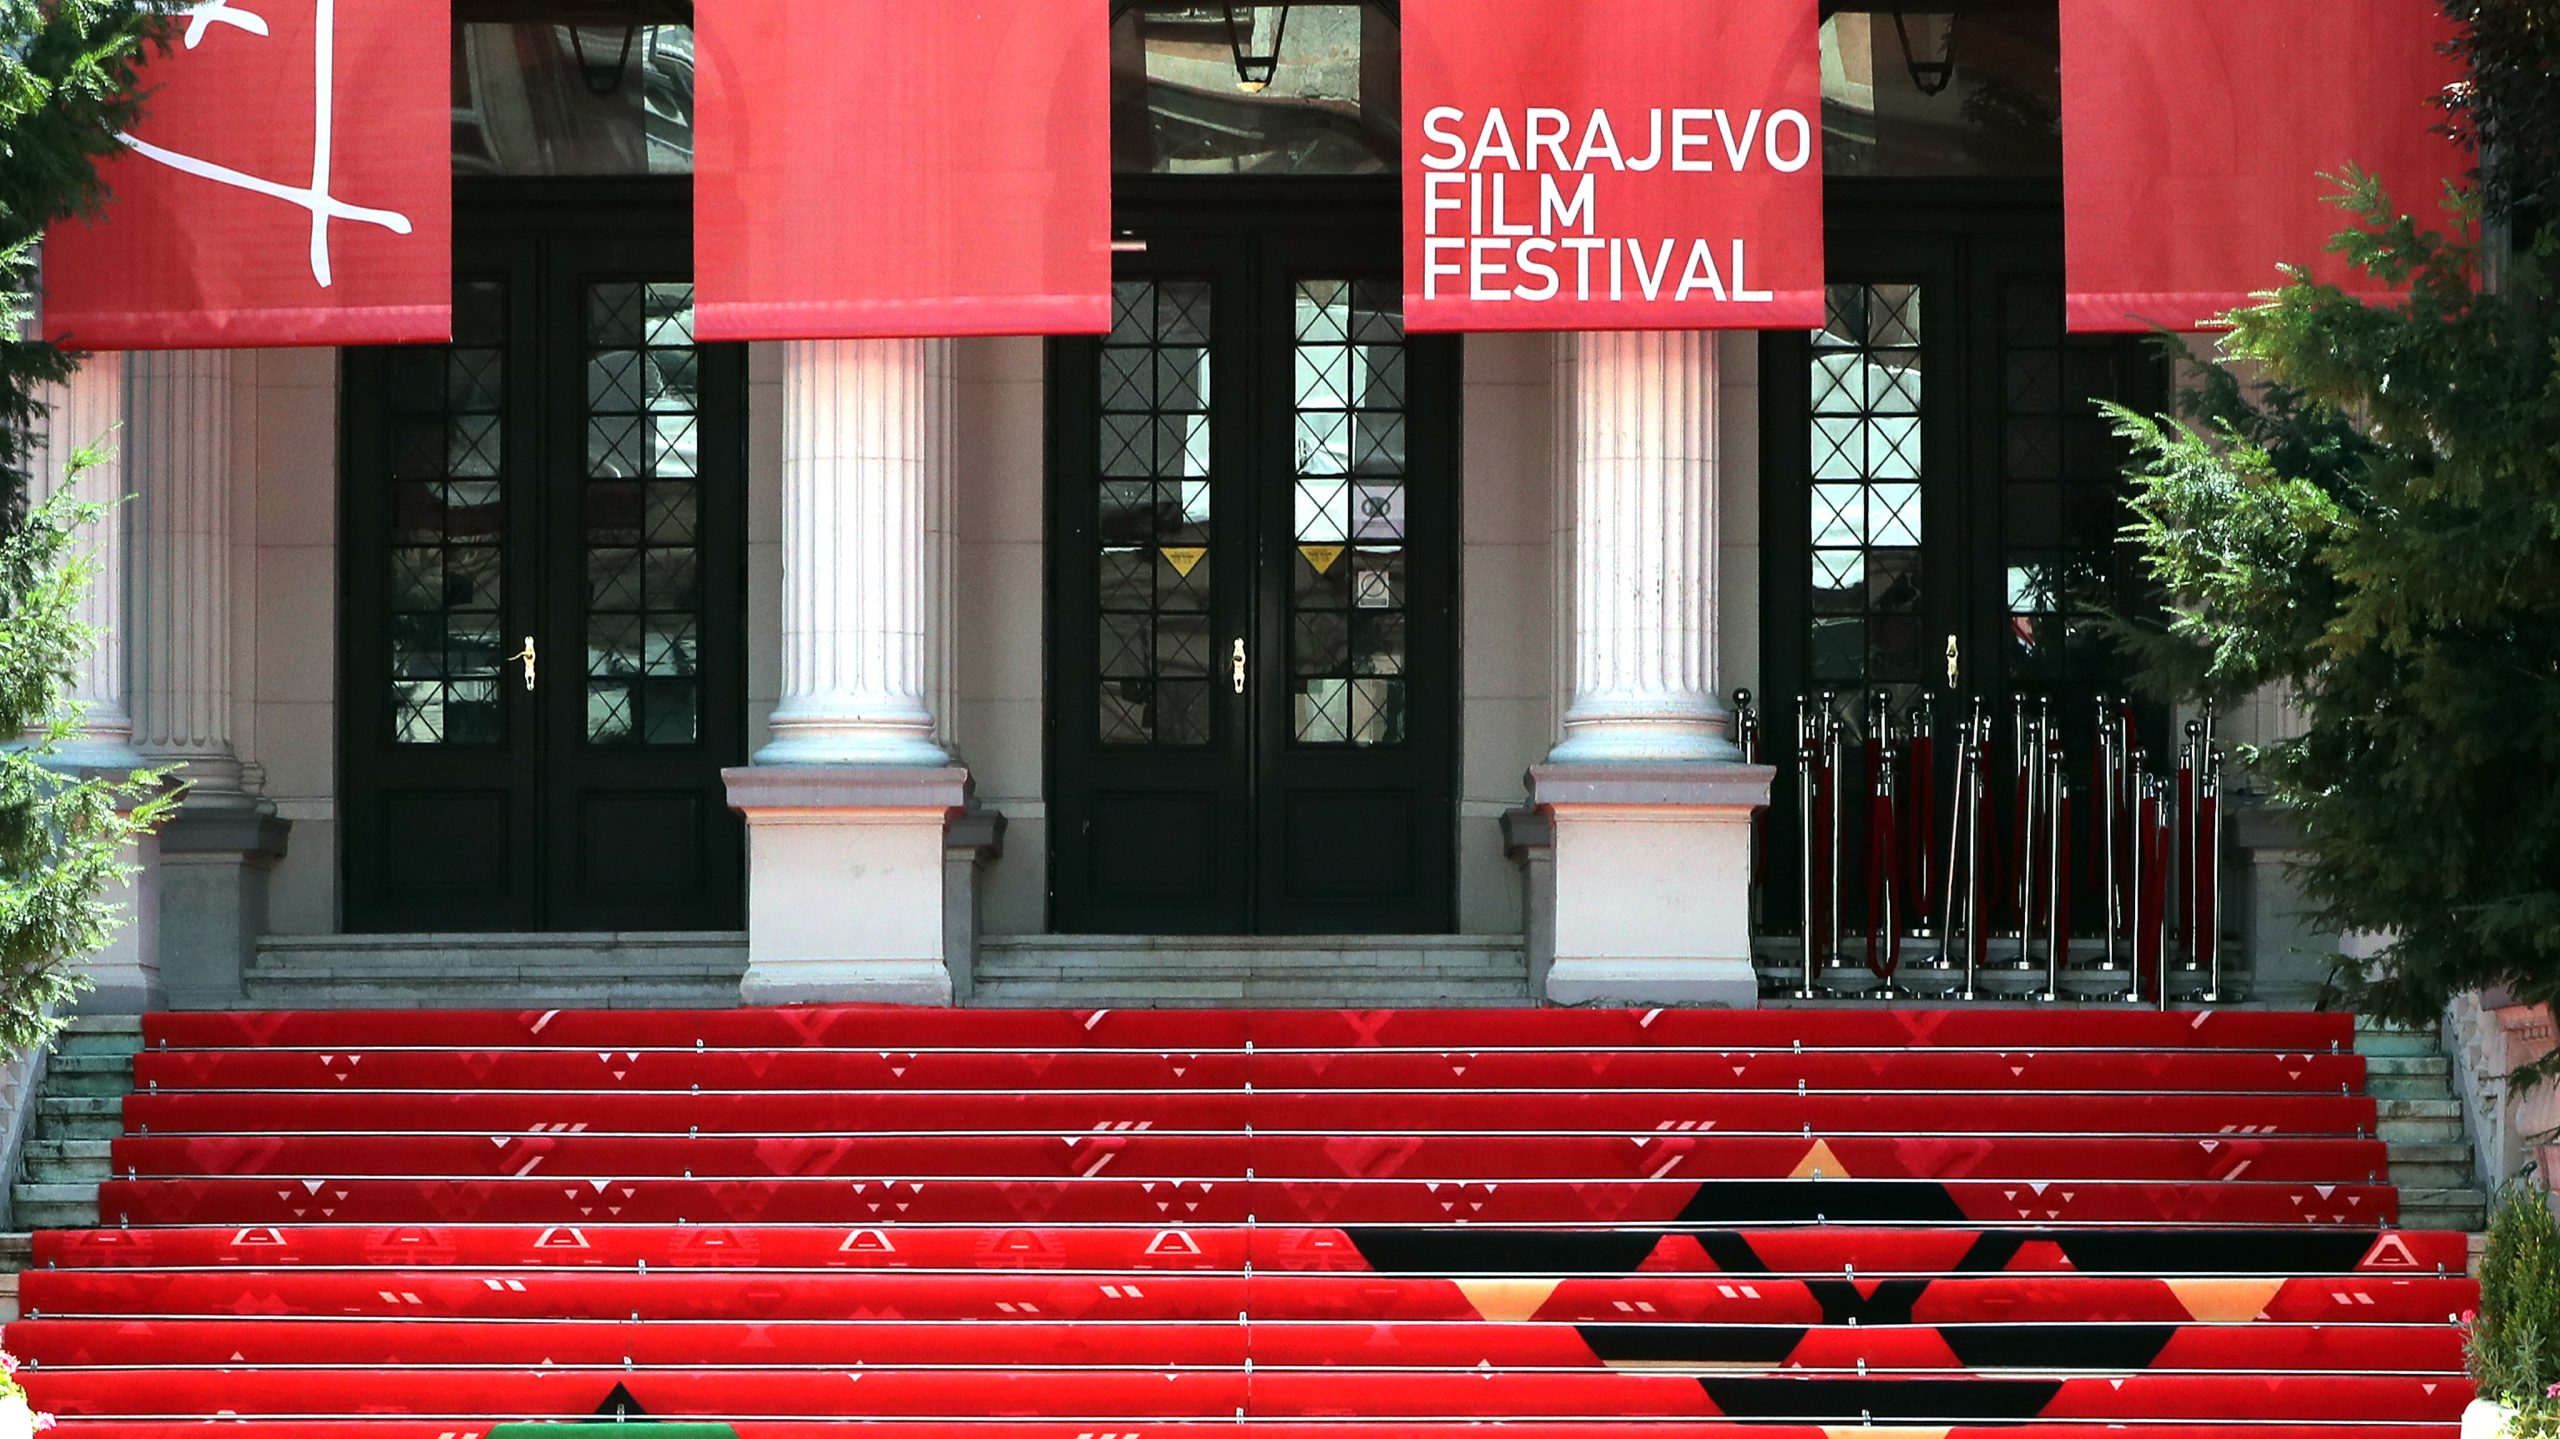 Sarajevo Film festival